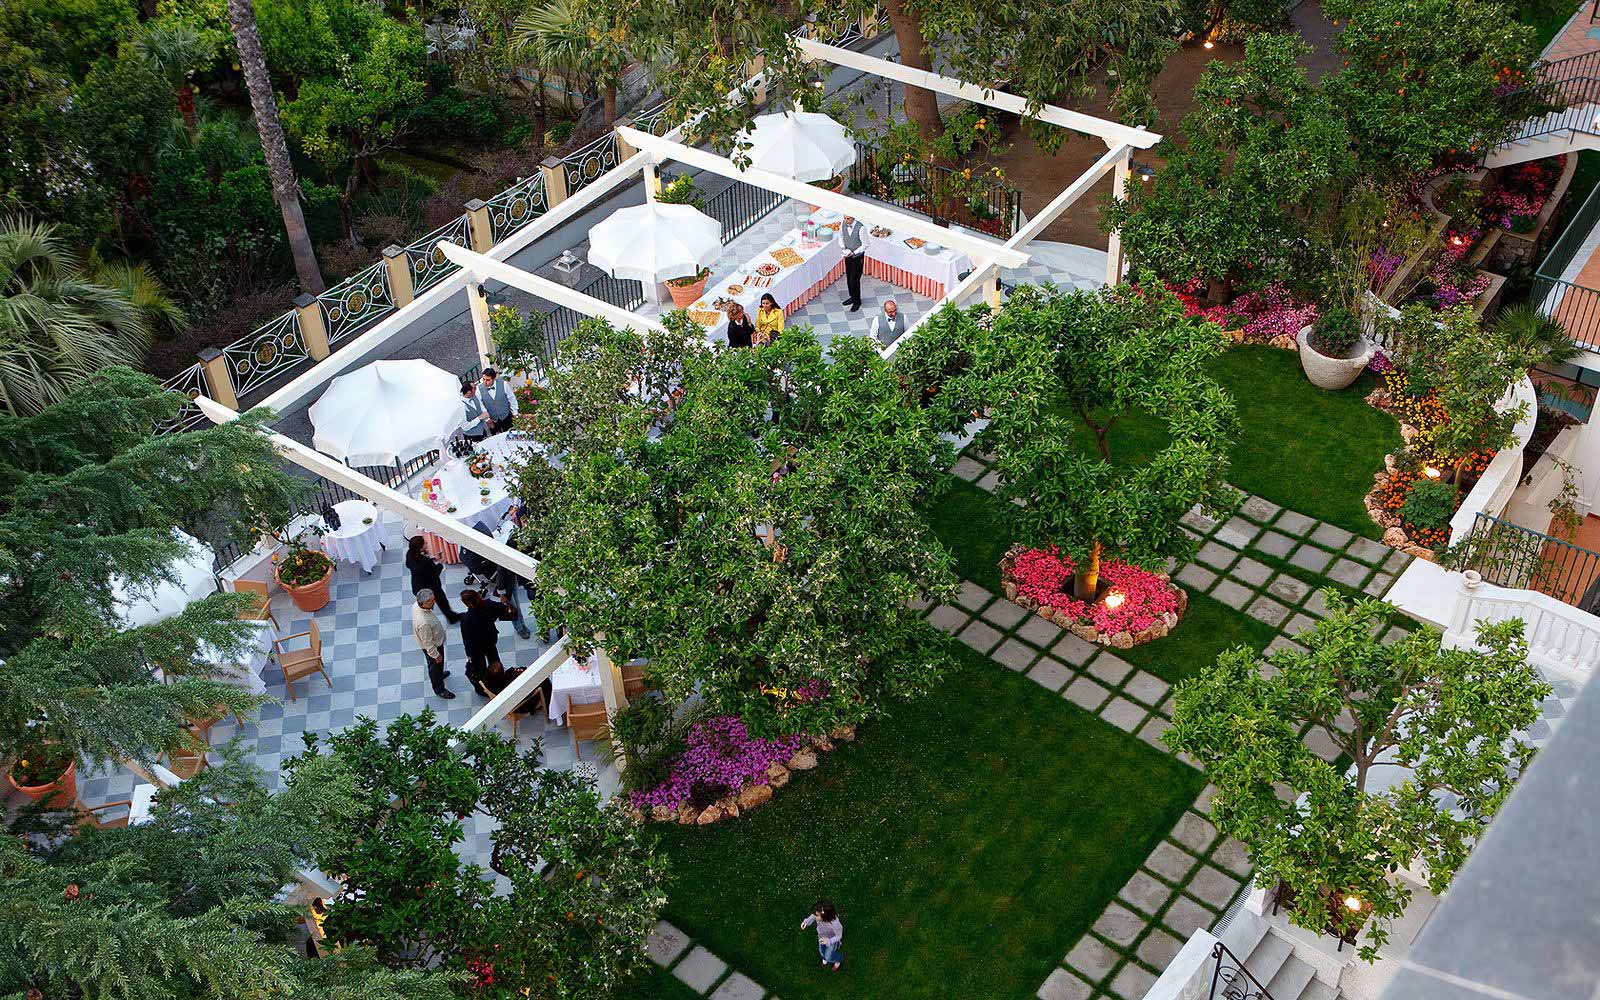 Garden terrace at the Grand Hotel La Favorita